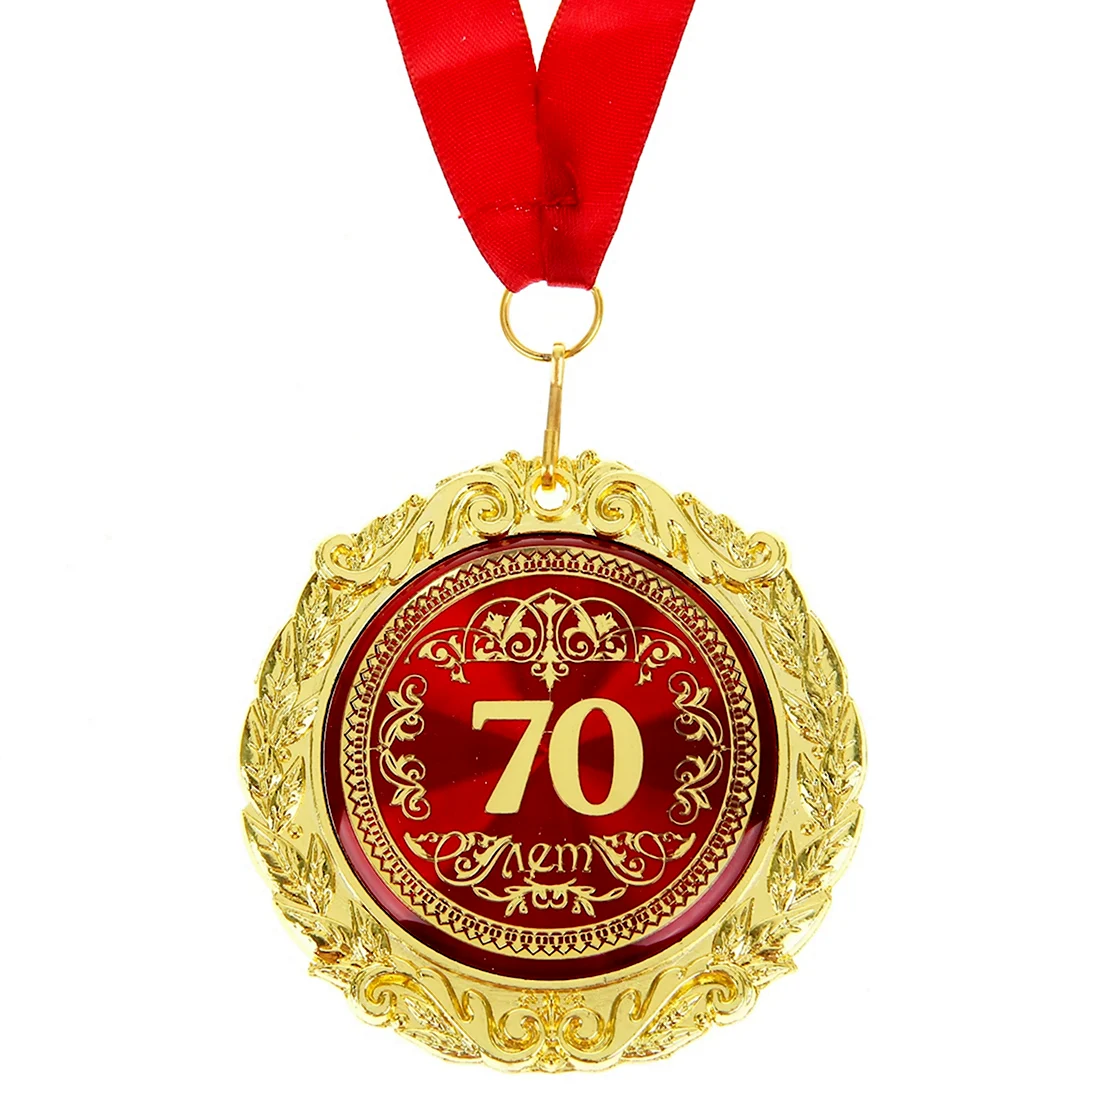 Медаль с юбилеем 70 лет